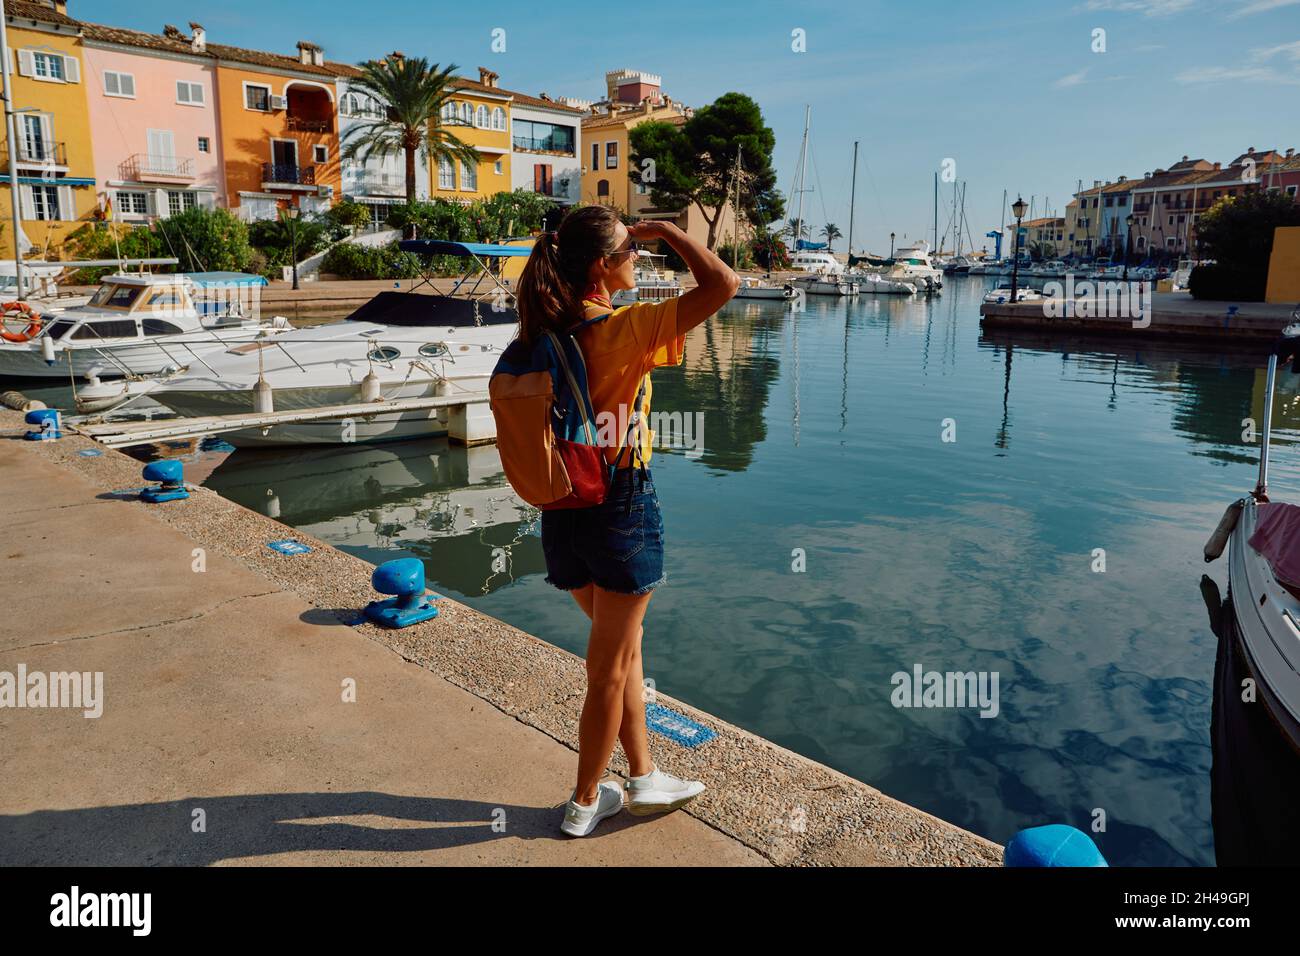 Femme voyageuse se tient sur la jetée avec des yachts et des bateaux dans le beau port de Port Saplaya près de Valence avec des maisons colorées. concept de voyageur Banque D'Images